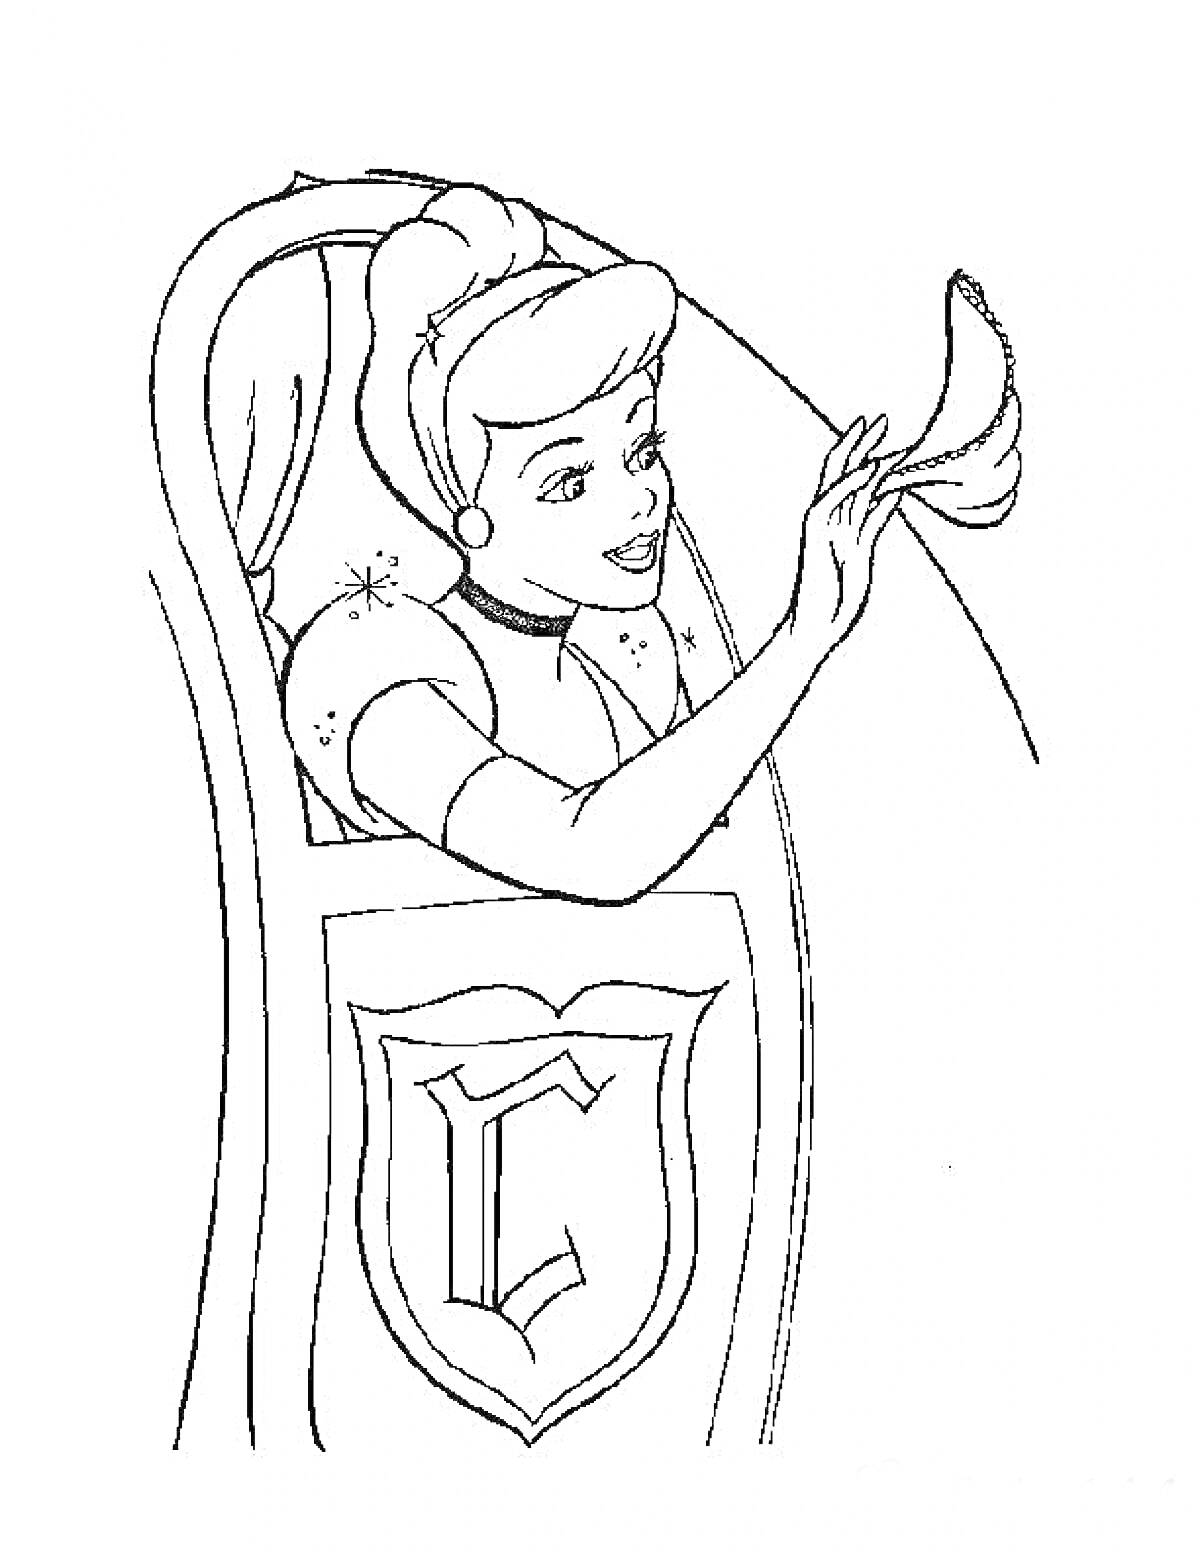 Девушка с высоким пучком и платком в руке, украшенная буквой 